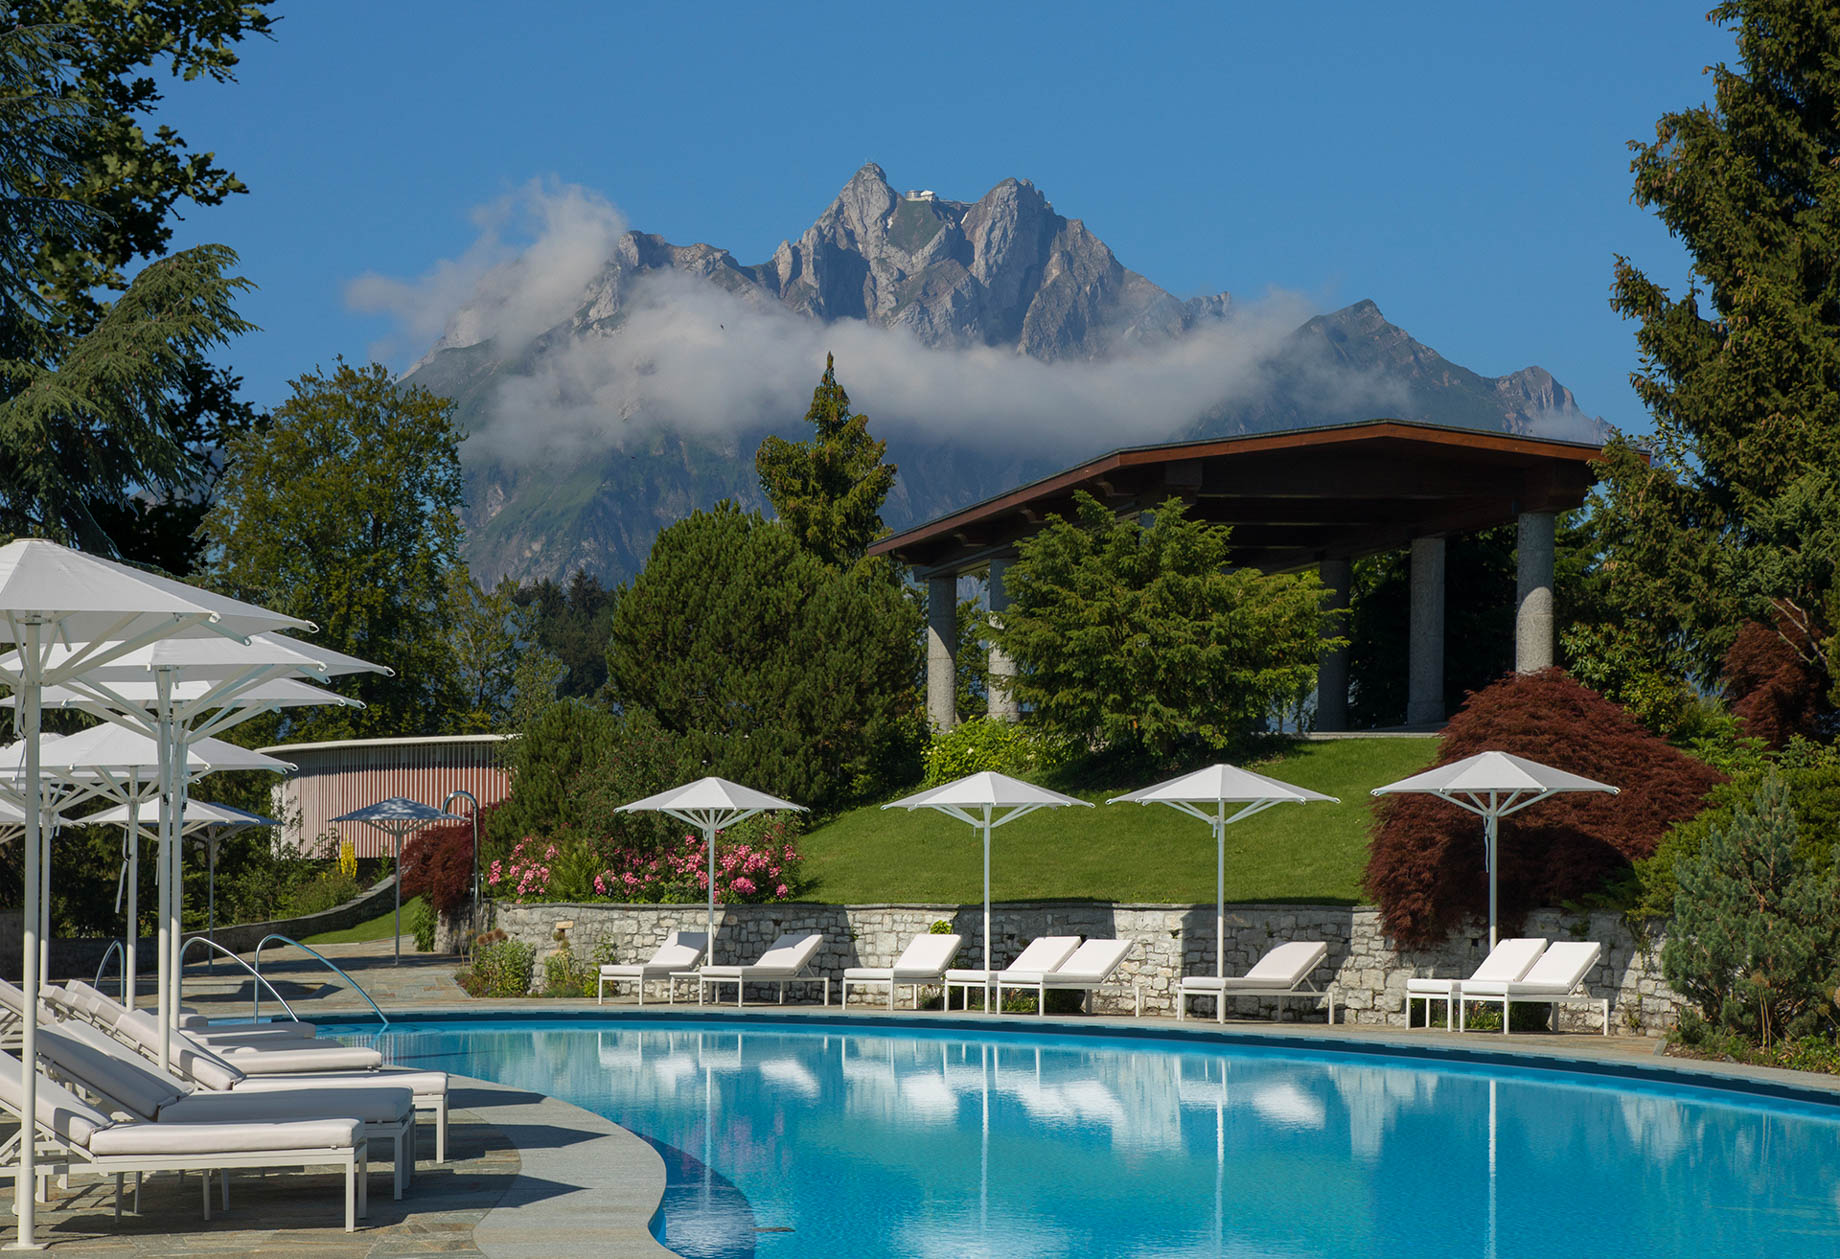 Burgenstock Hotel & Alpine Spa – Obburgen, Switzerland – Outdoor Pool